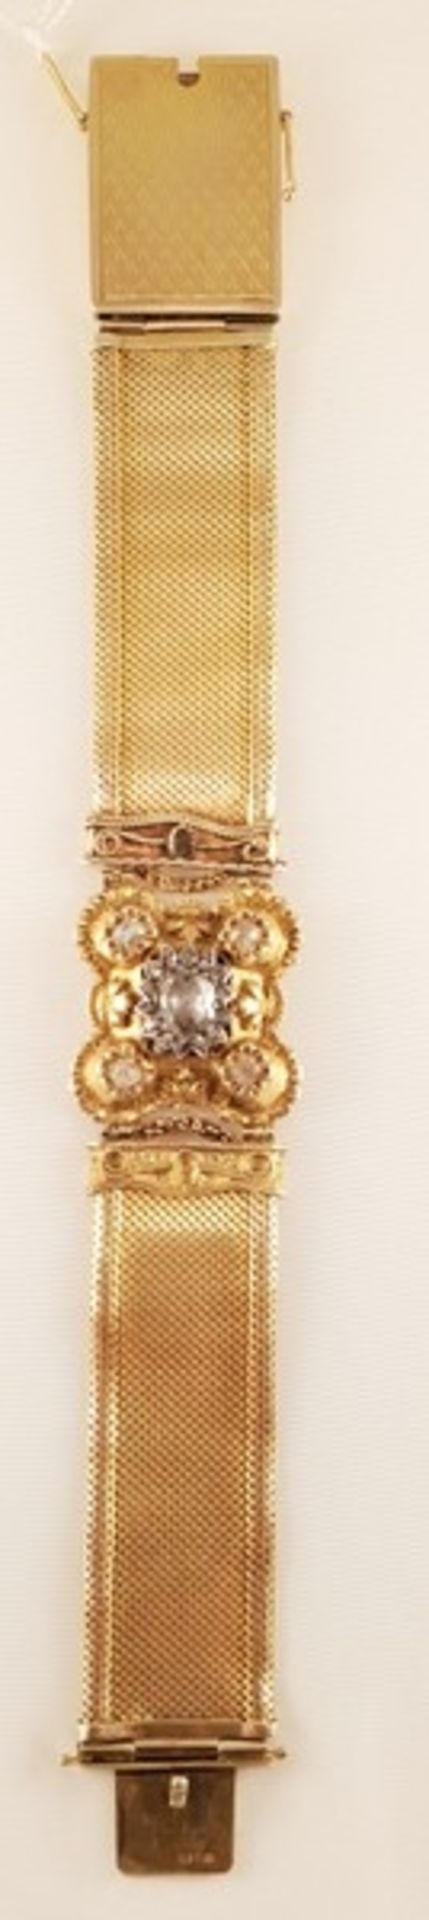 Jugendstil Armband mit Altschlif Diamanten zus.ca.1,2ct , Gold 585, Länge: 18,5cm , 34,2g, - Image 2 of 3